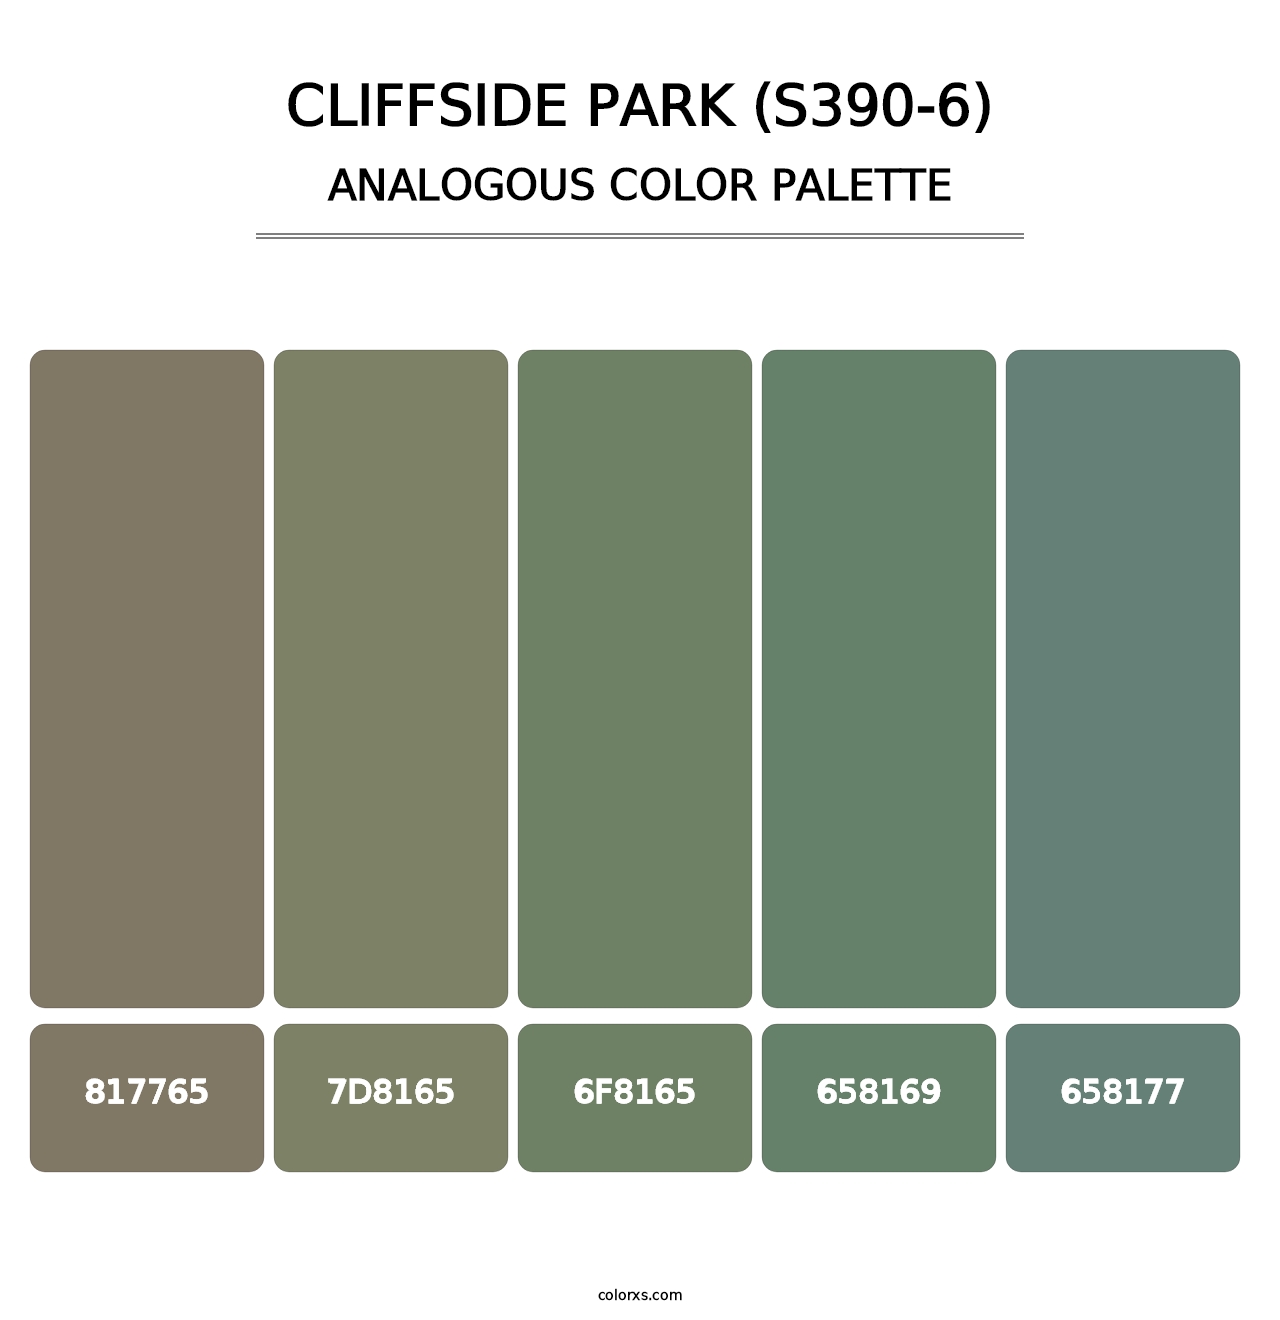 Cliffside Park (S390-6) - Analogous Color Palette